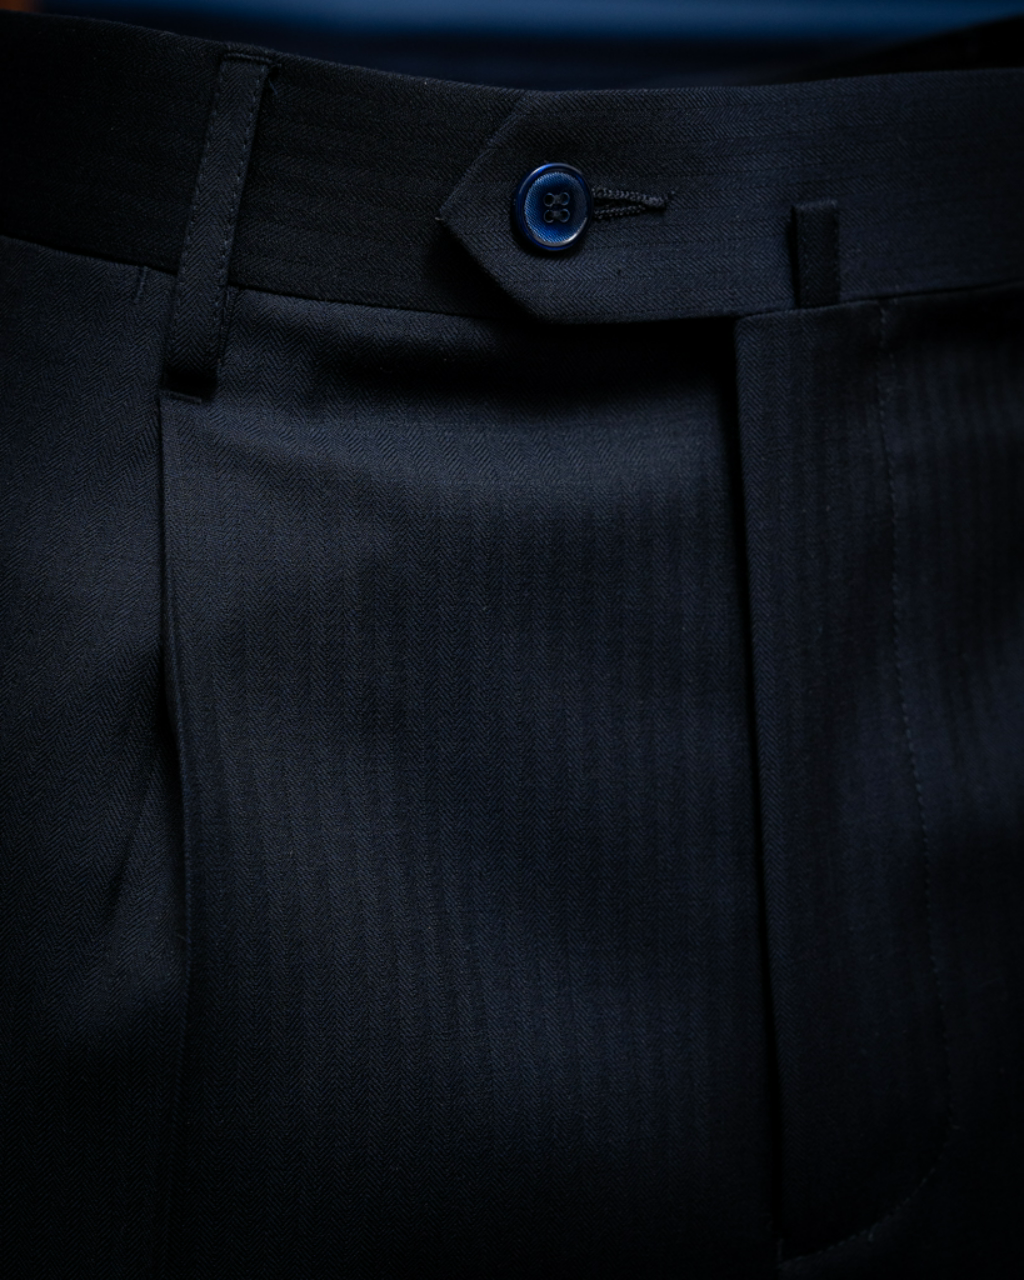 Herringbone Blue Grinta Suit 